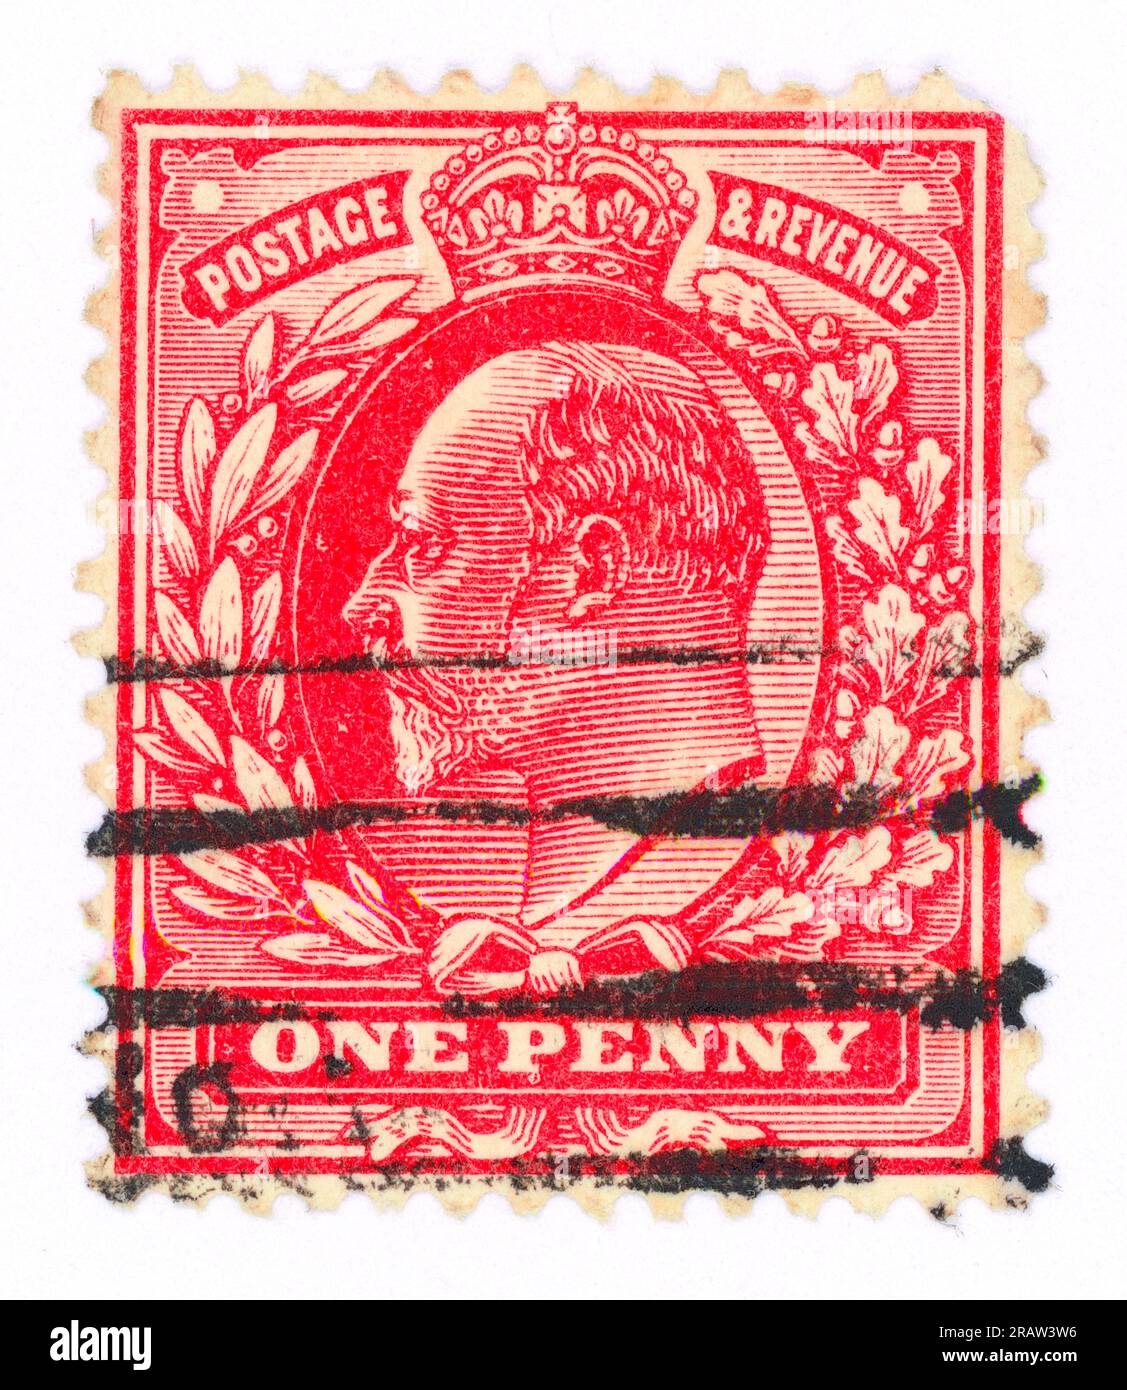 König Edward VII (1901-1910). Porto- und Einnahmenstempel. Vereinigtes Königreich. Wurde vermutlich 1902 ausgestellt. Nennwert: Ein Penny. Stockfoto